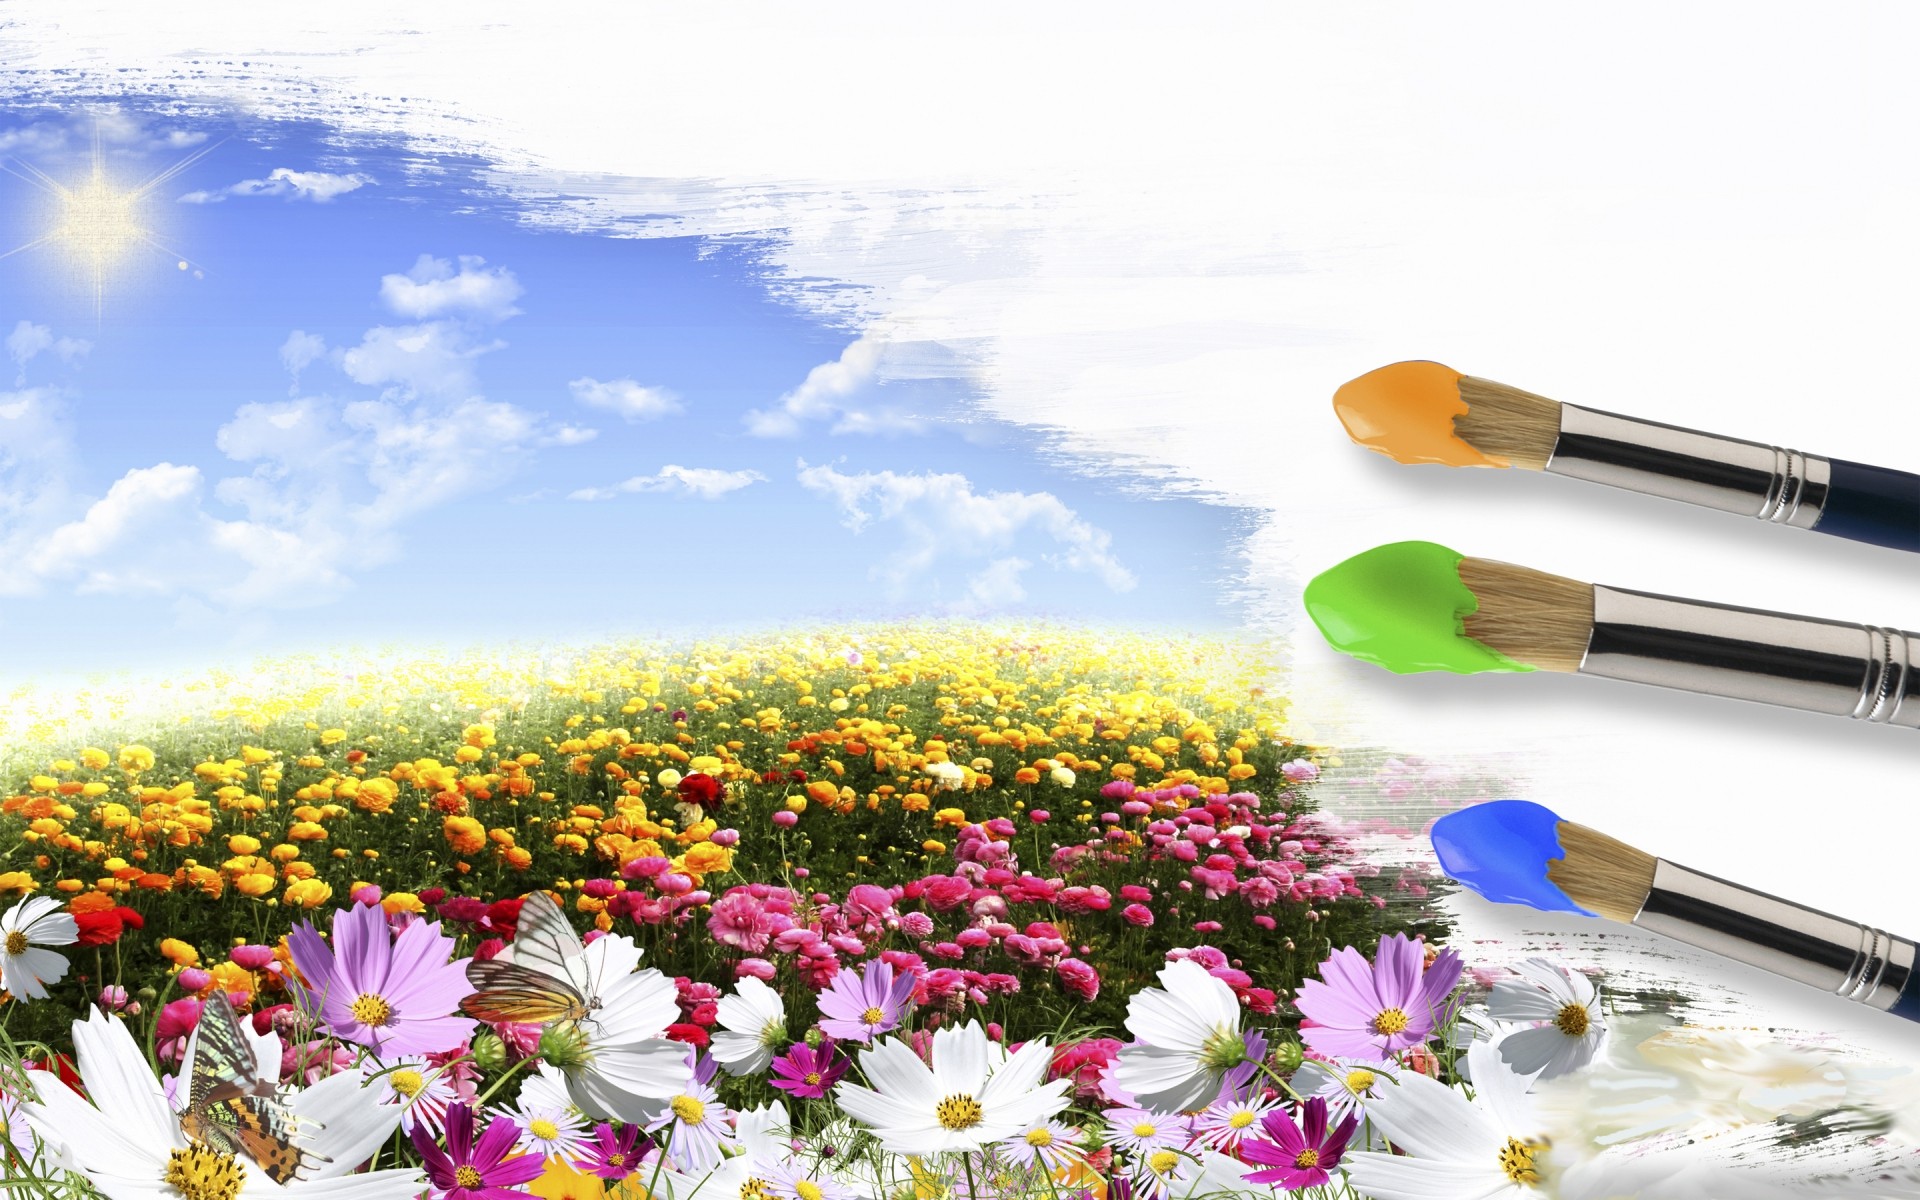 drawings природа яркий цветок лето рост на открытом воздухе трава хорошую погоду солнце краска цветок земли фон